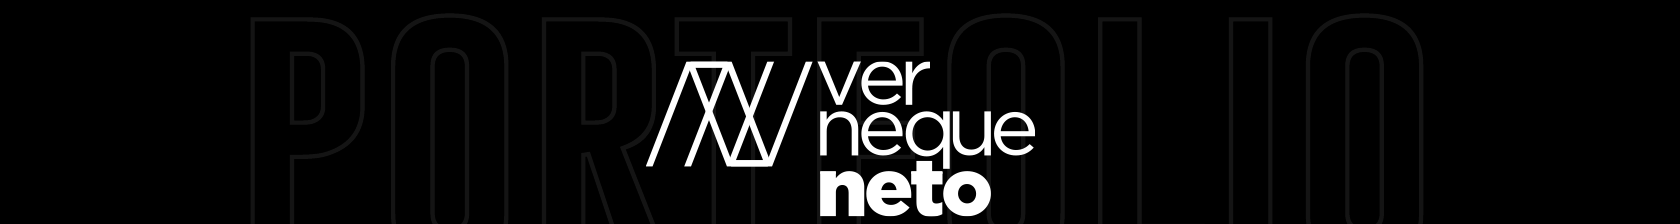 Neto Verneque's profile banner